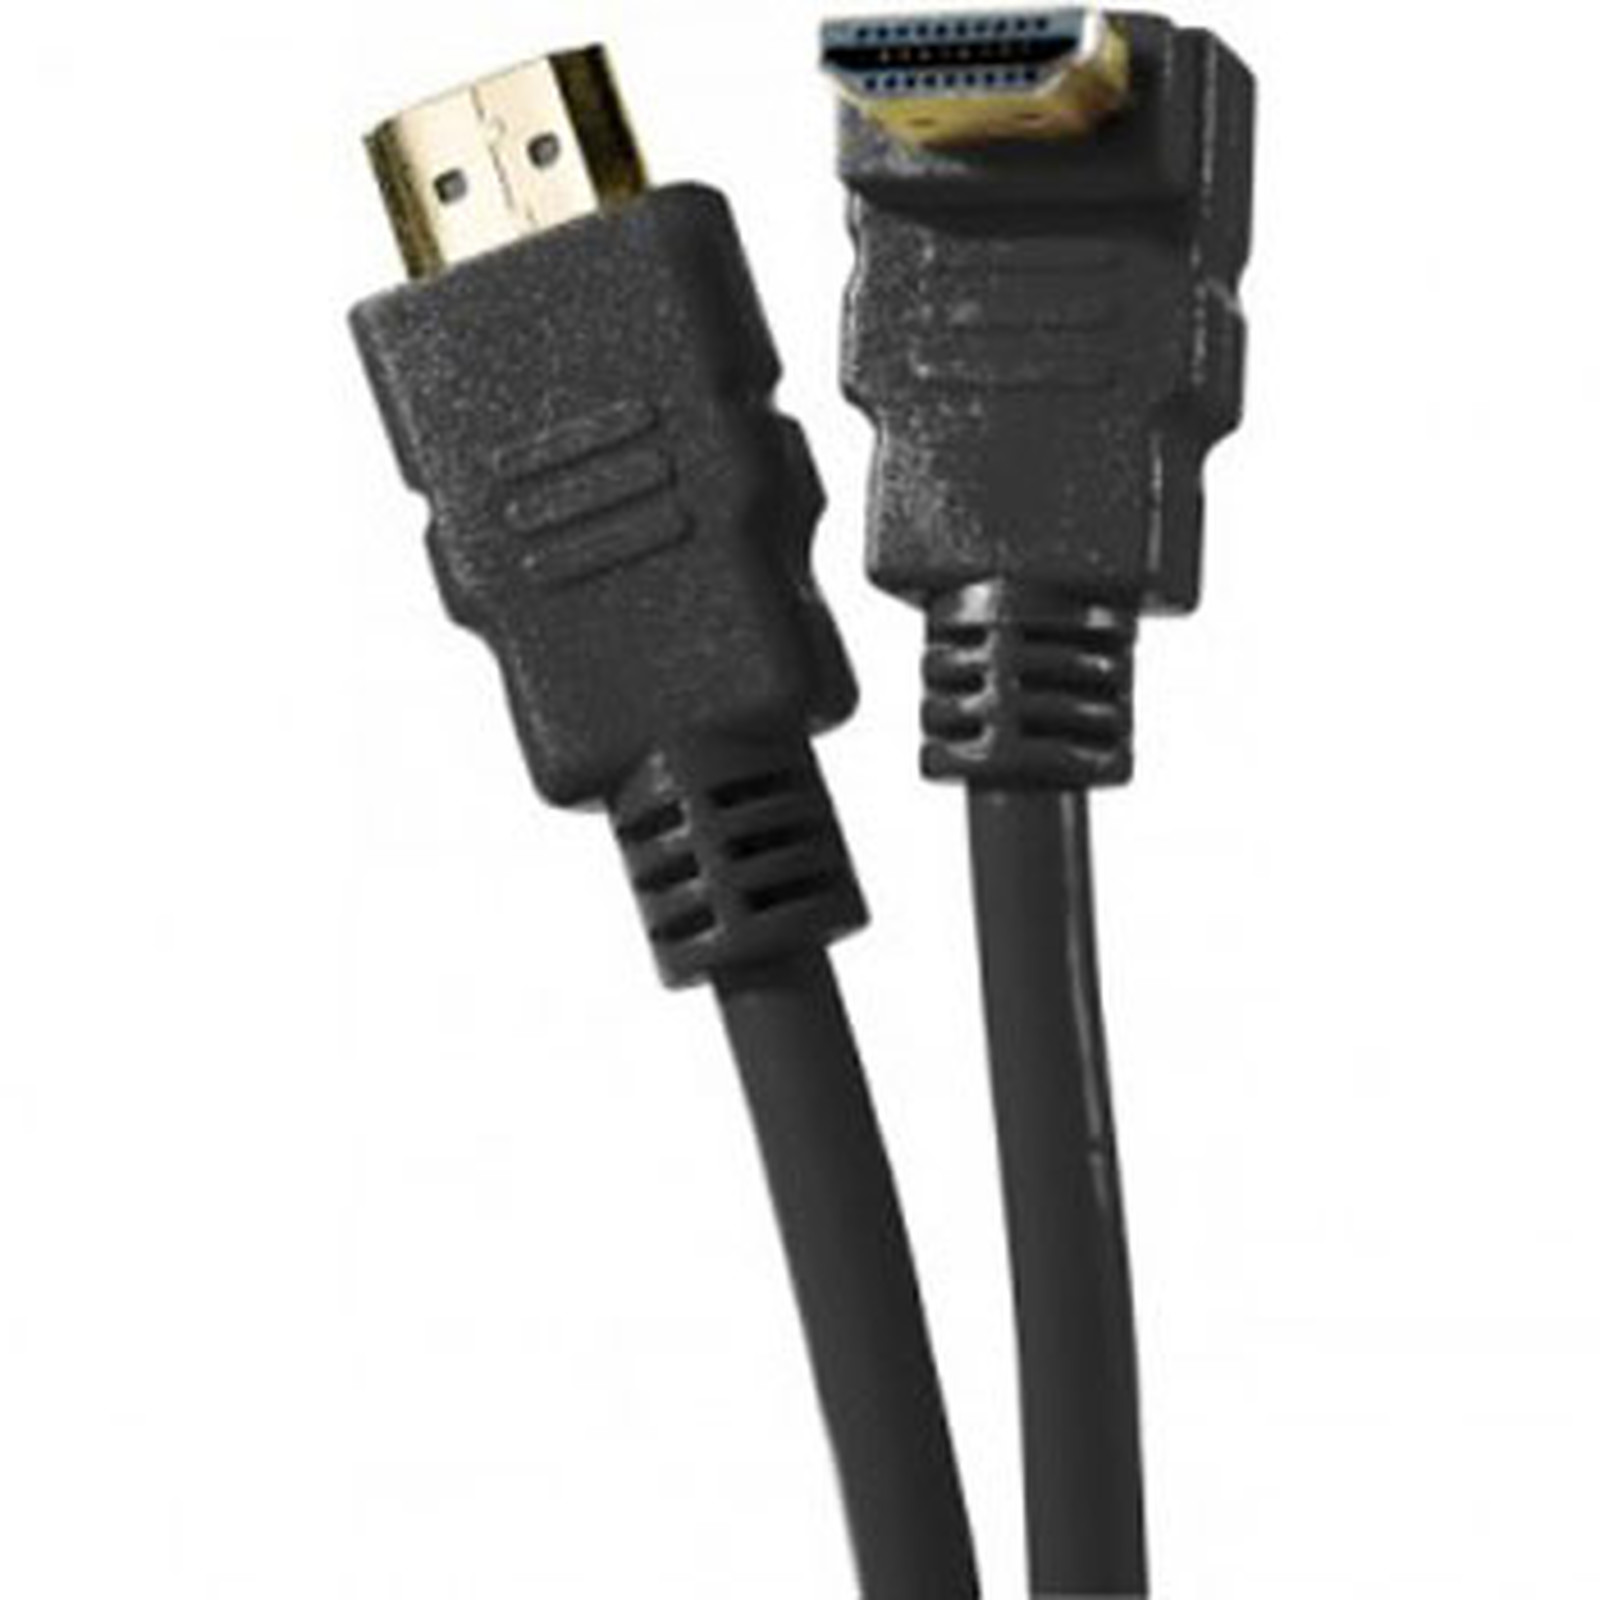 Cable HDMI 1.4 Ethernet Channel Coude male/male Noir - (3 mètres) - HDMI Generique